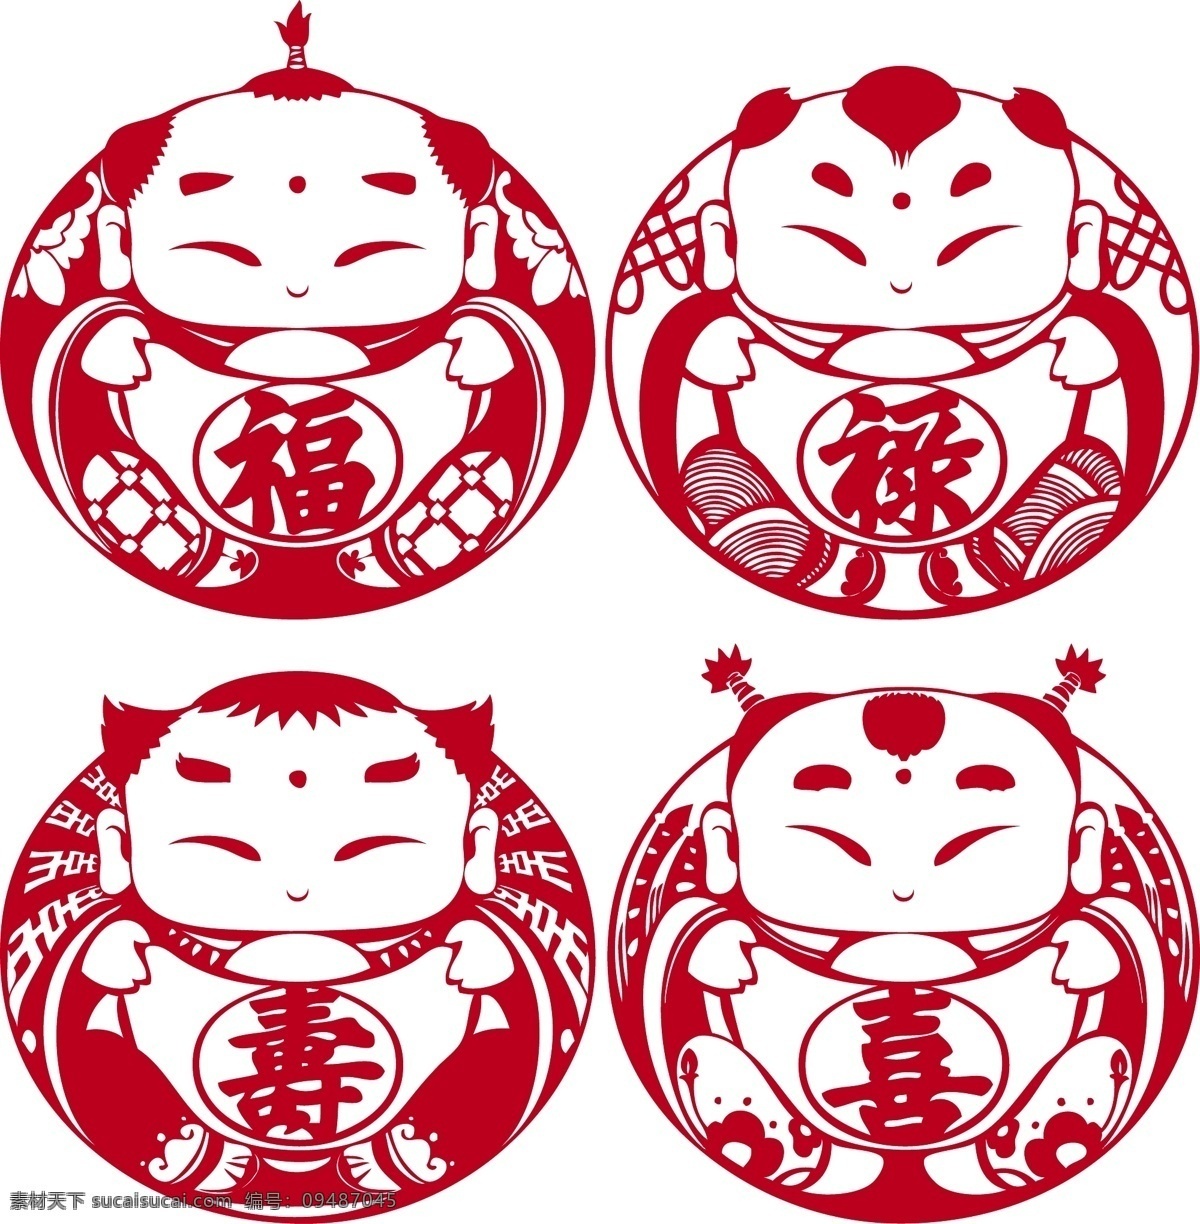 剪纸 传统 红色 喜庆 福禄寿喜 娃娃 散财童子 春节 节日素材 矢量